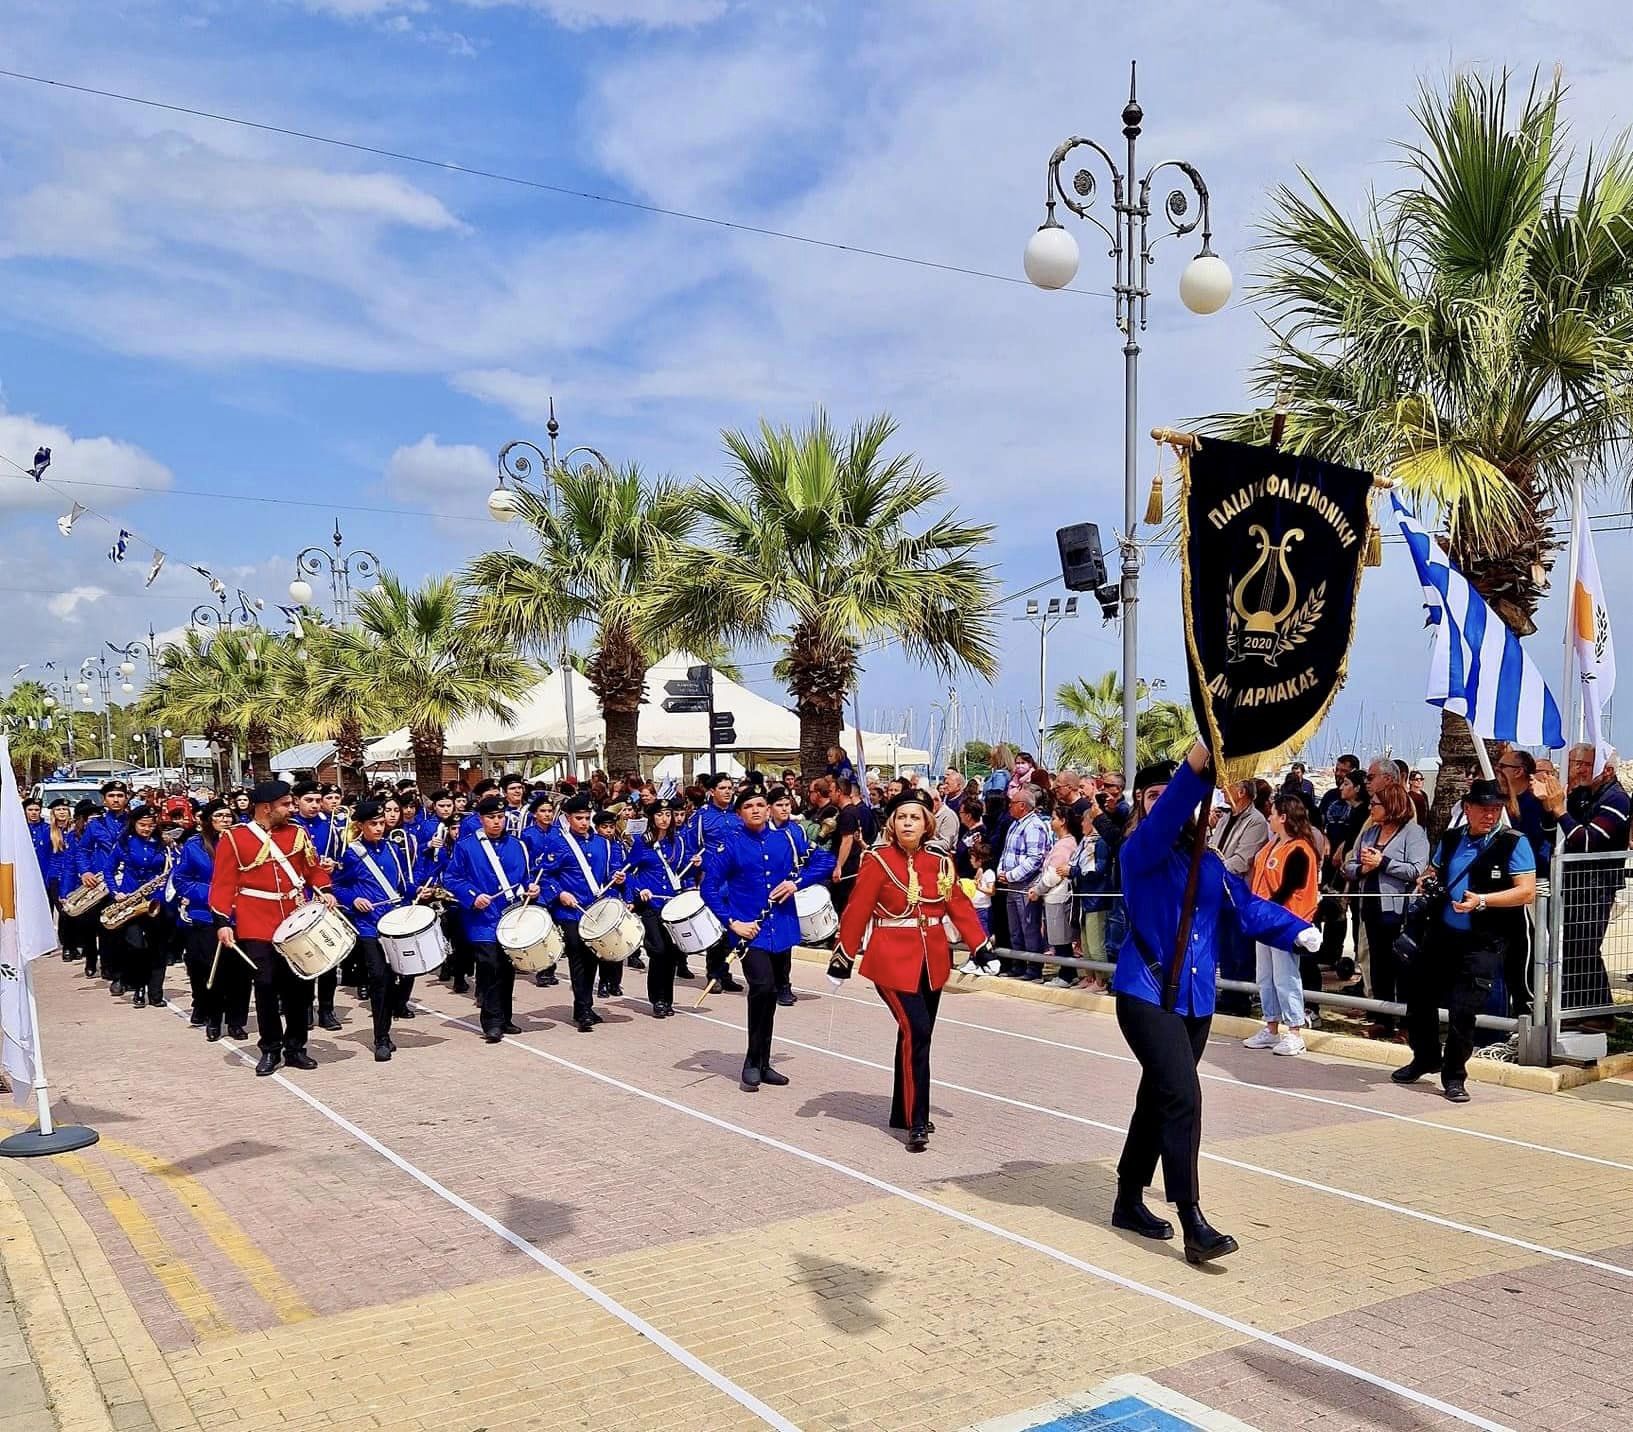 Για πρώτη φορά στην παρέλαση η Παιδική Φιλαρμονική Ορχήστρα του Δήμου Λάρνακας  (φώτο)